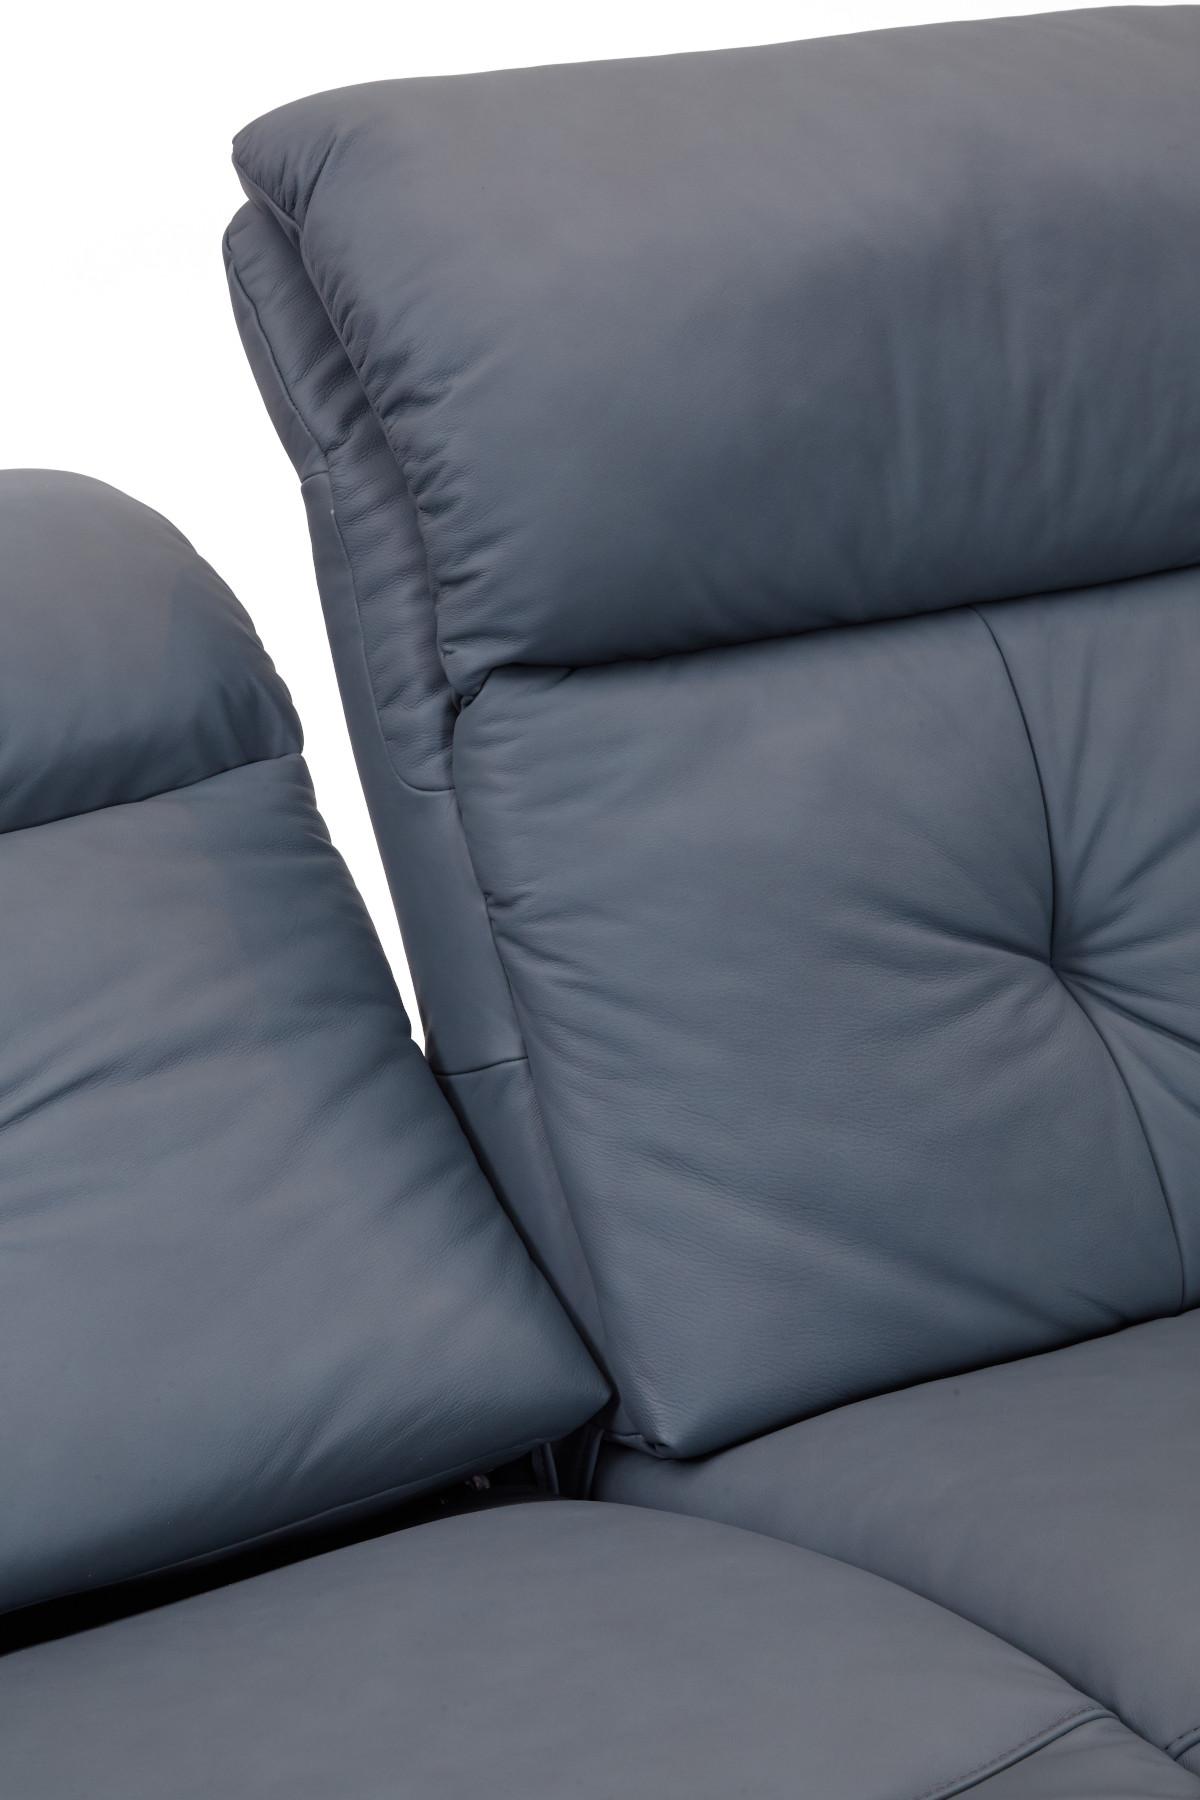 Himolla Swan 2.5 Seat Recliner Sofa